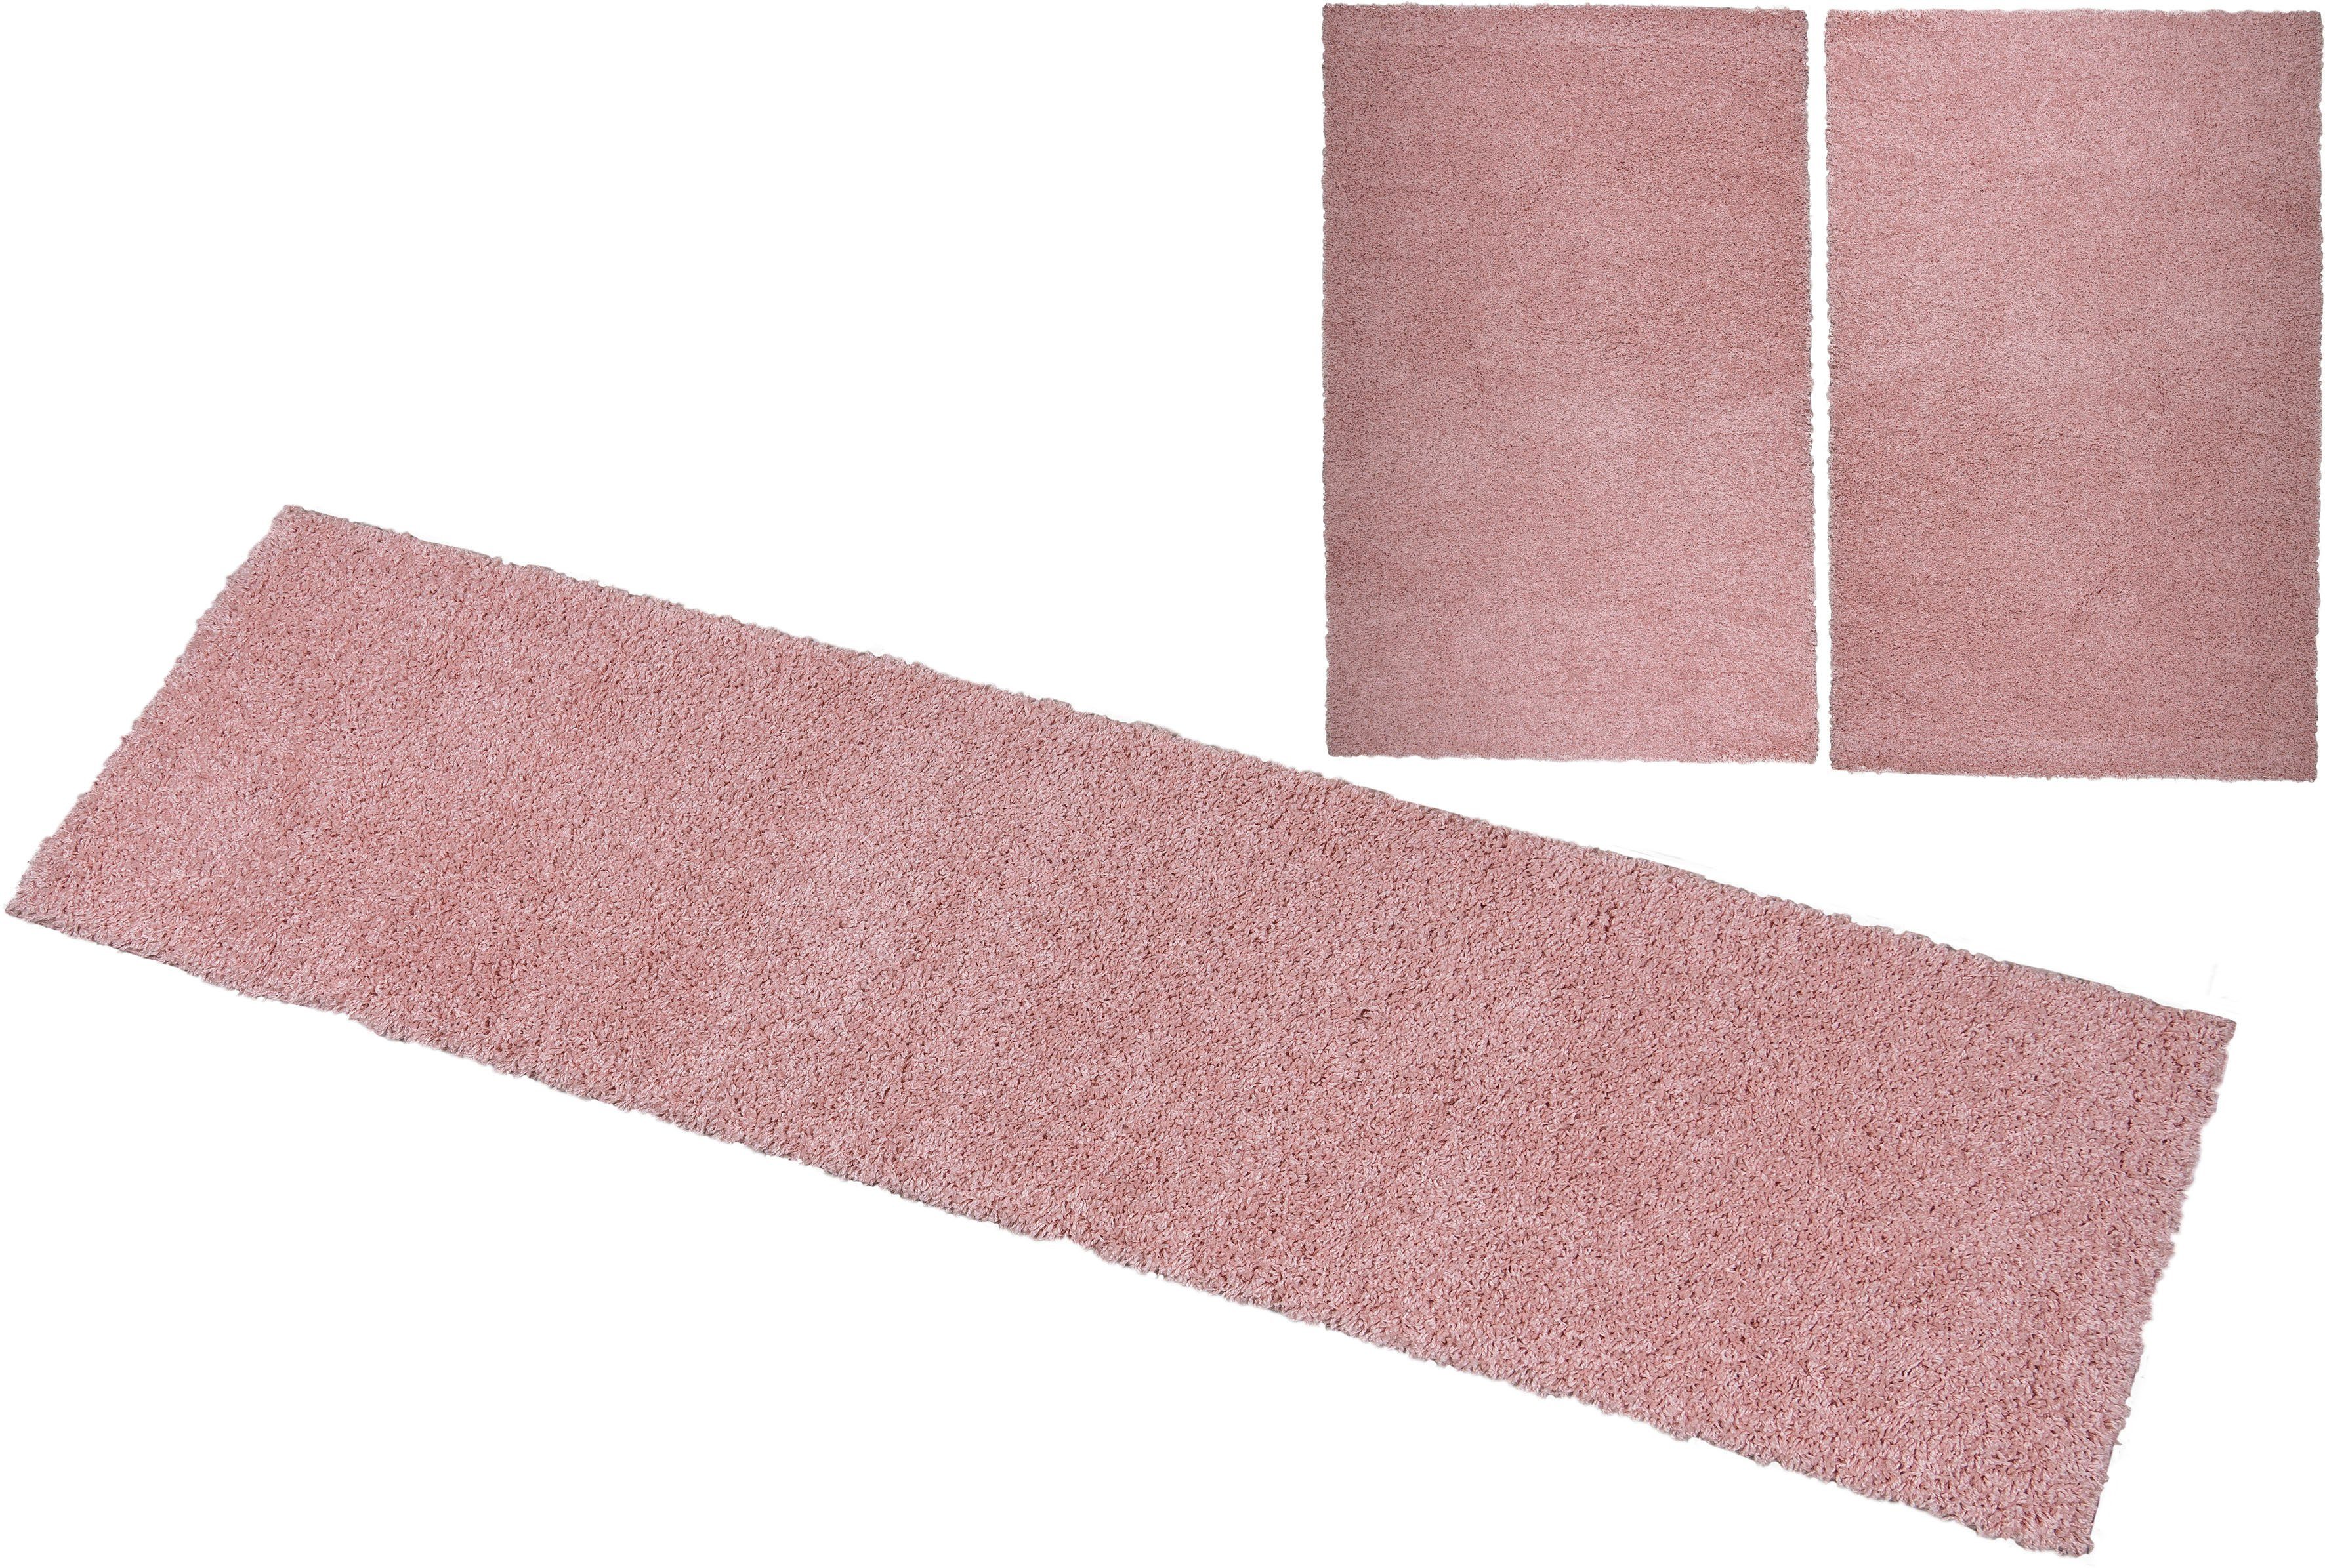 Bettumrandung Shaggy Soft Bruno Banani, Höhe 30 mm, (3-tlg), gewebt, Uni-Farben, besonders weich, Bettvorleger, Läufer-Set rosa